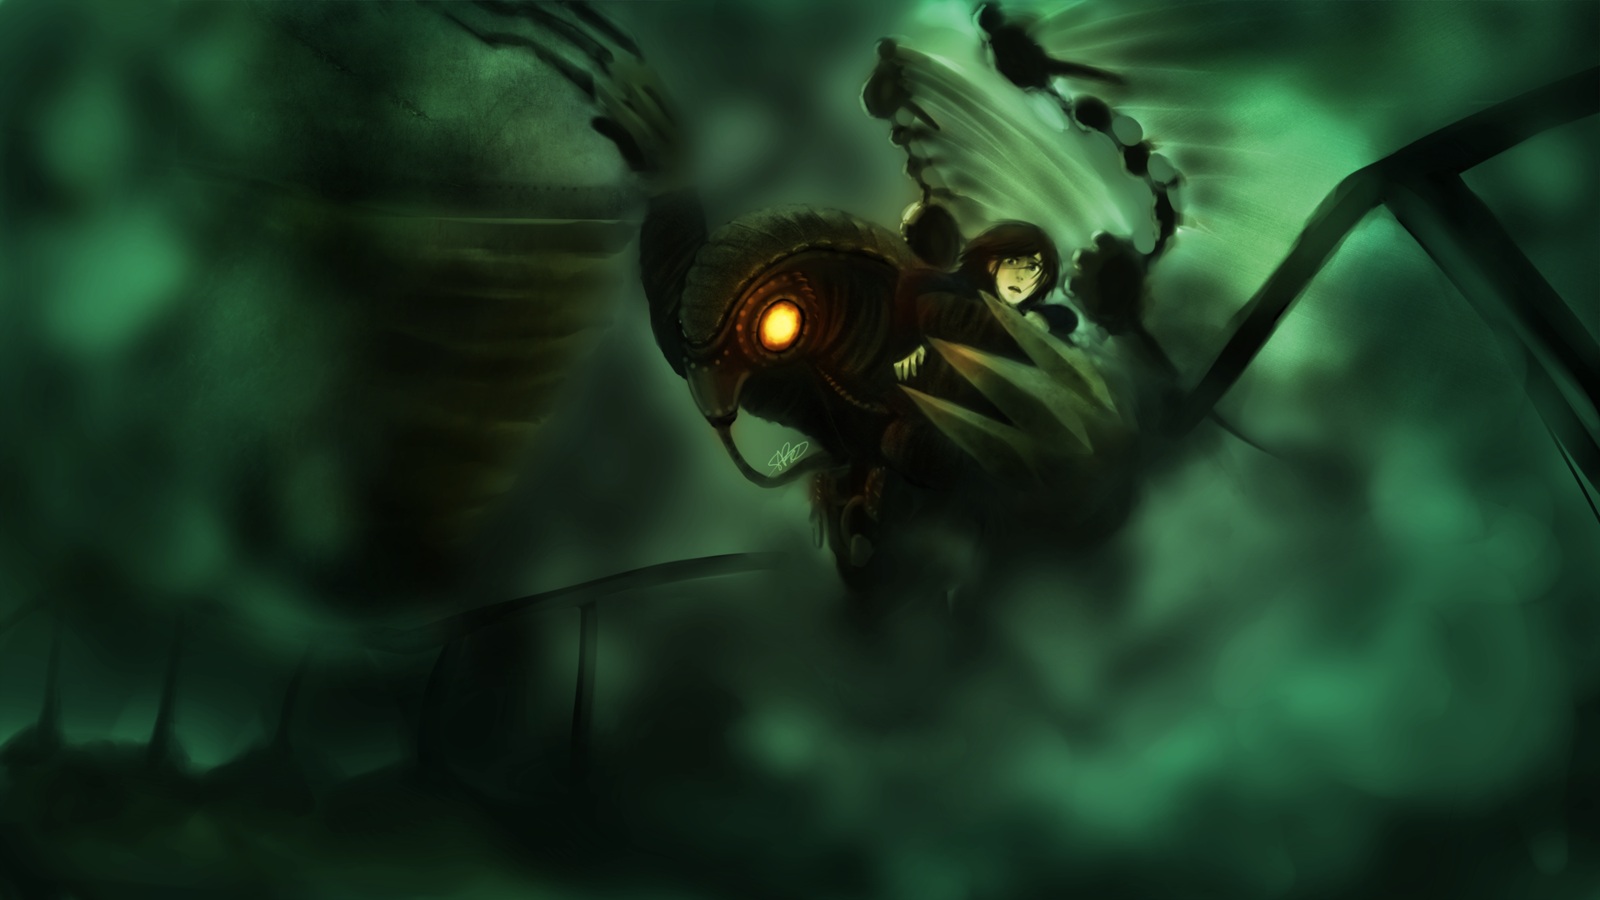 Bioshock Infinite Songbird Fan Art - HD Wallpaper 